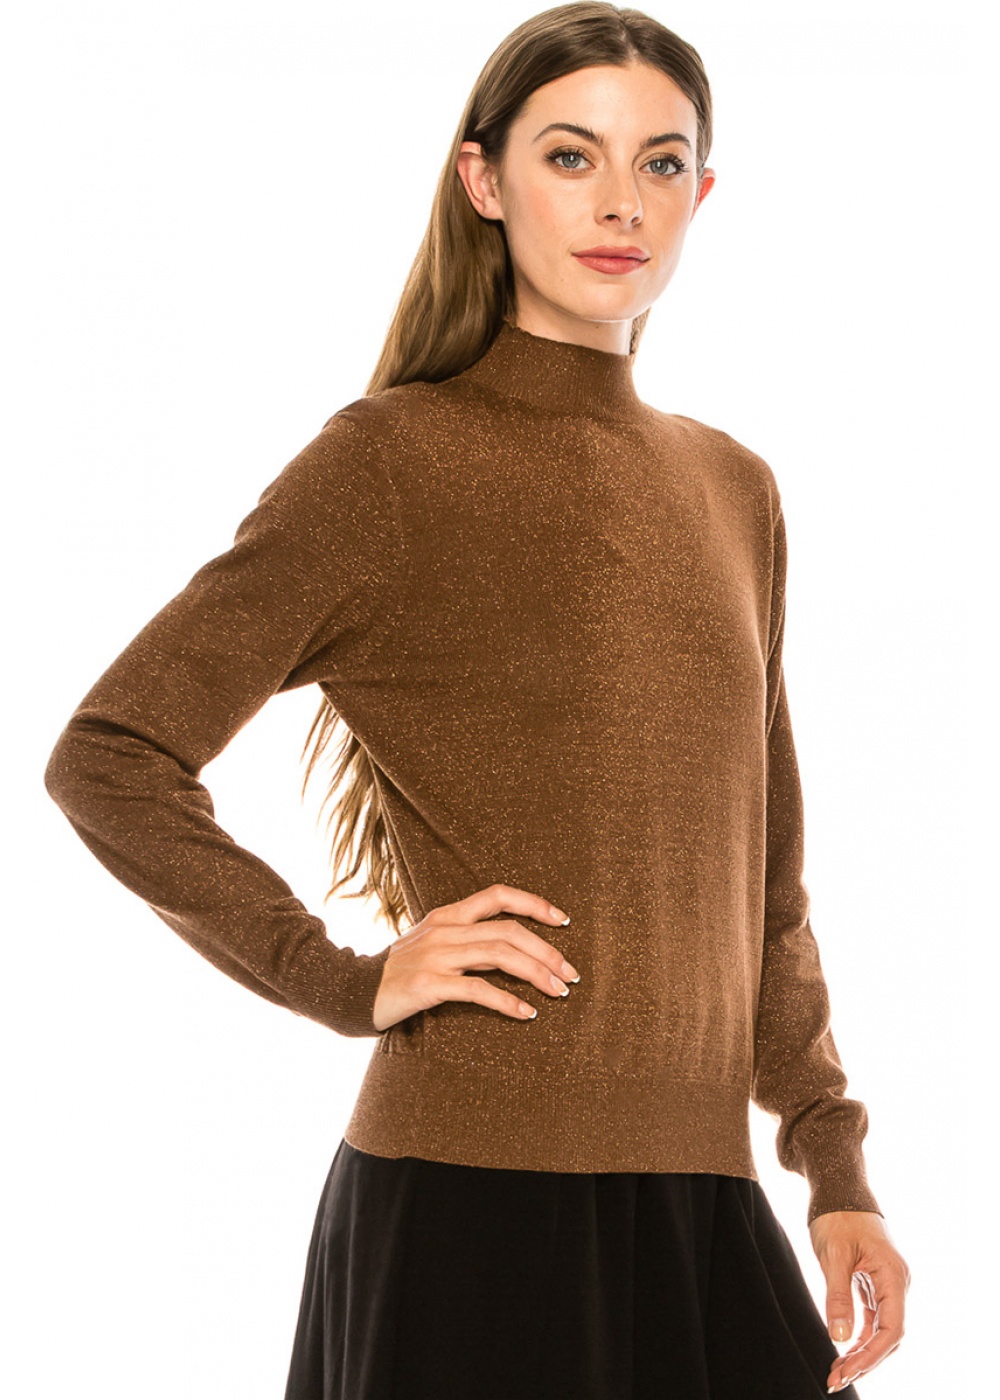 High neck lurex sweater in brown